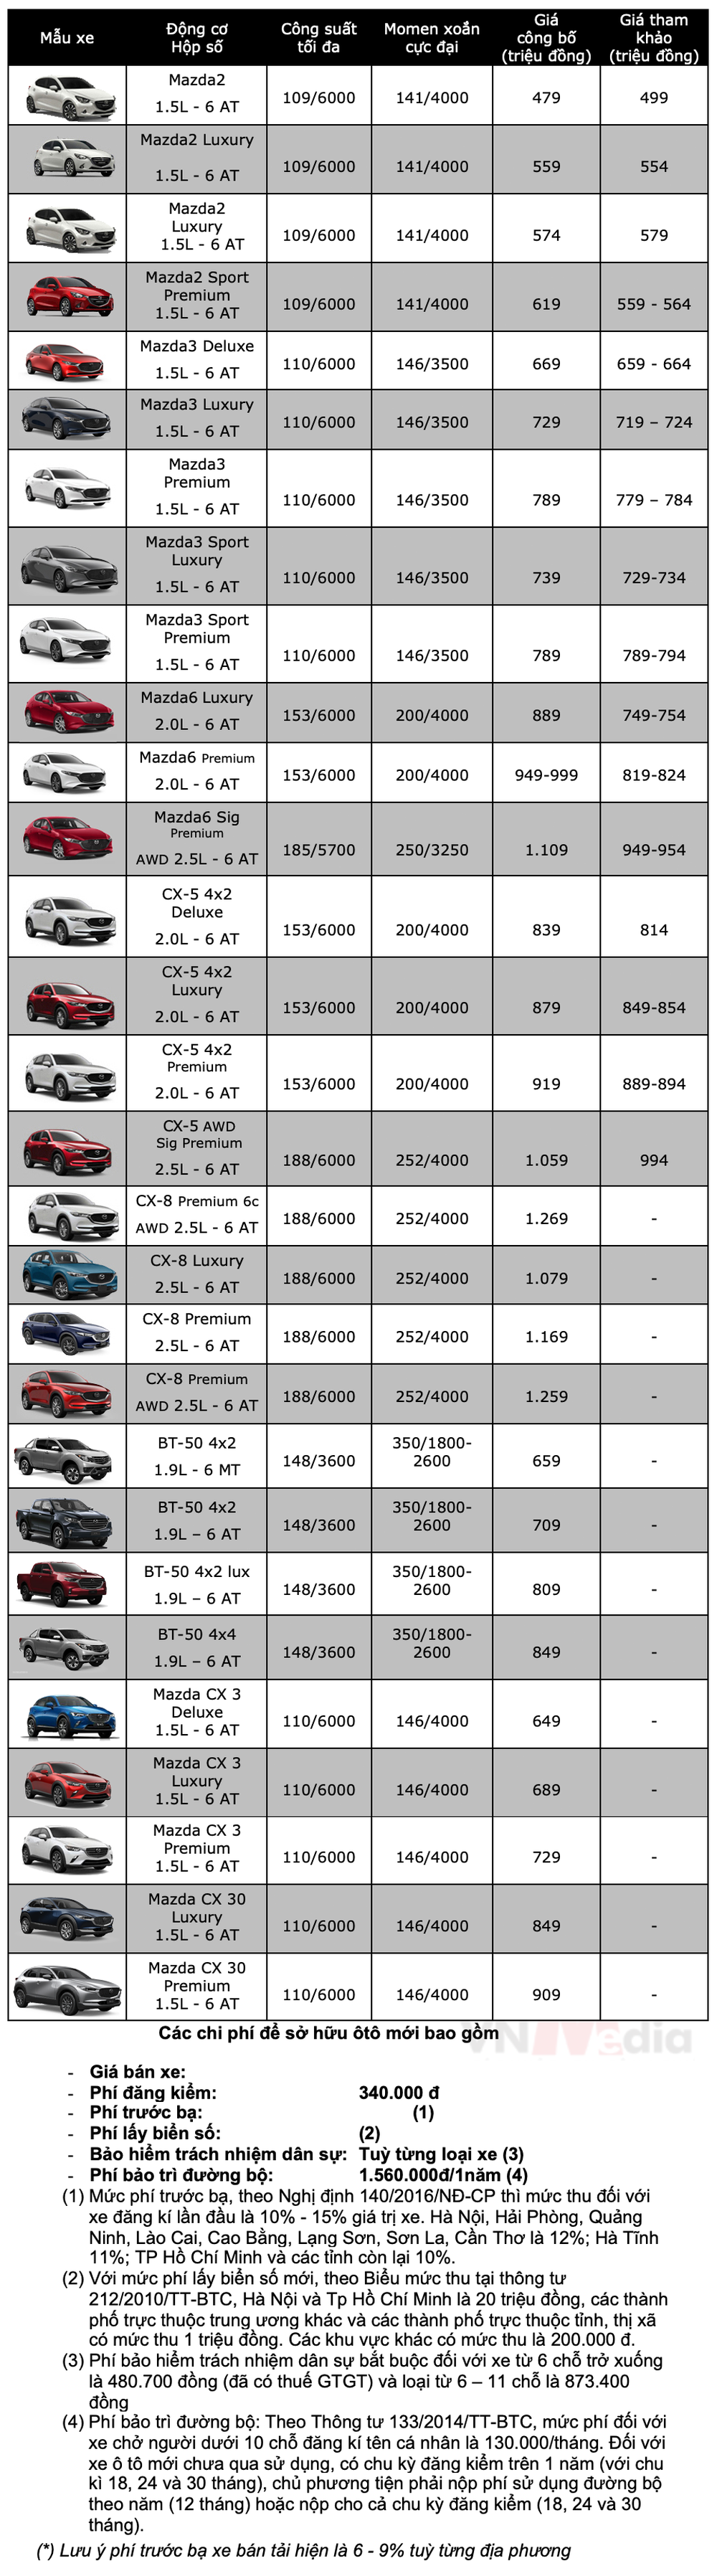 Bảng giá xe Mazda tháng 6: Mazda CX-5 được ưu đãi 137 triệu đồng - Ảnh 2.